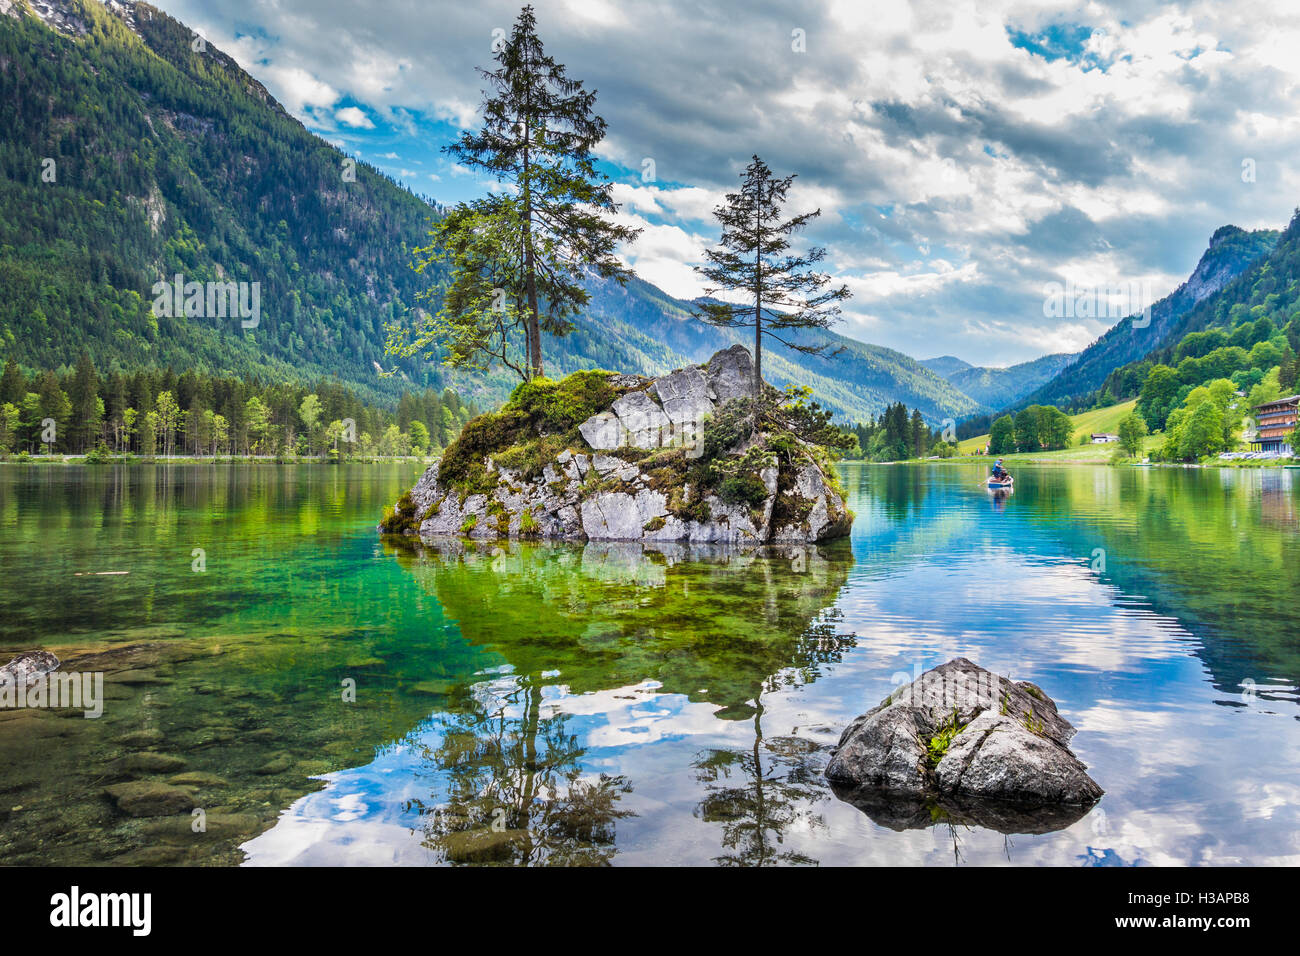 Schöne Szene von Bäumen auf einer Felseninsel in der idyllischen Landschaft am reizvollen See Hintersee, Nationalpark Berchtesgadener Land, Oberbayern, Deutschland Stockfoto